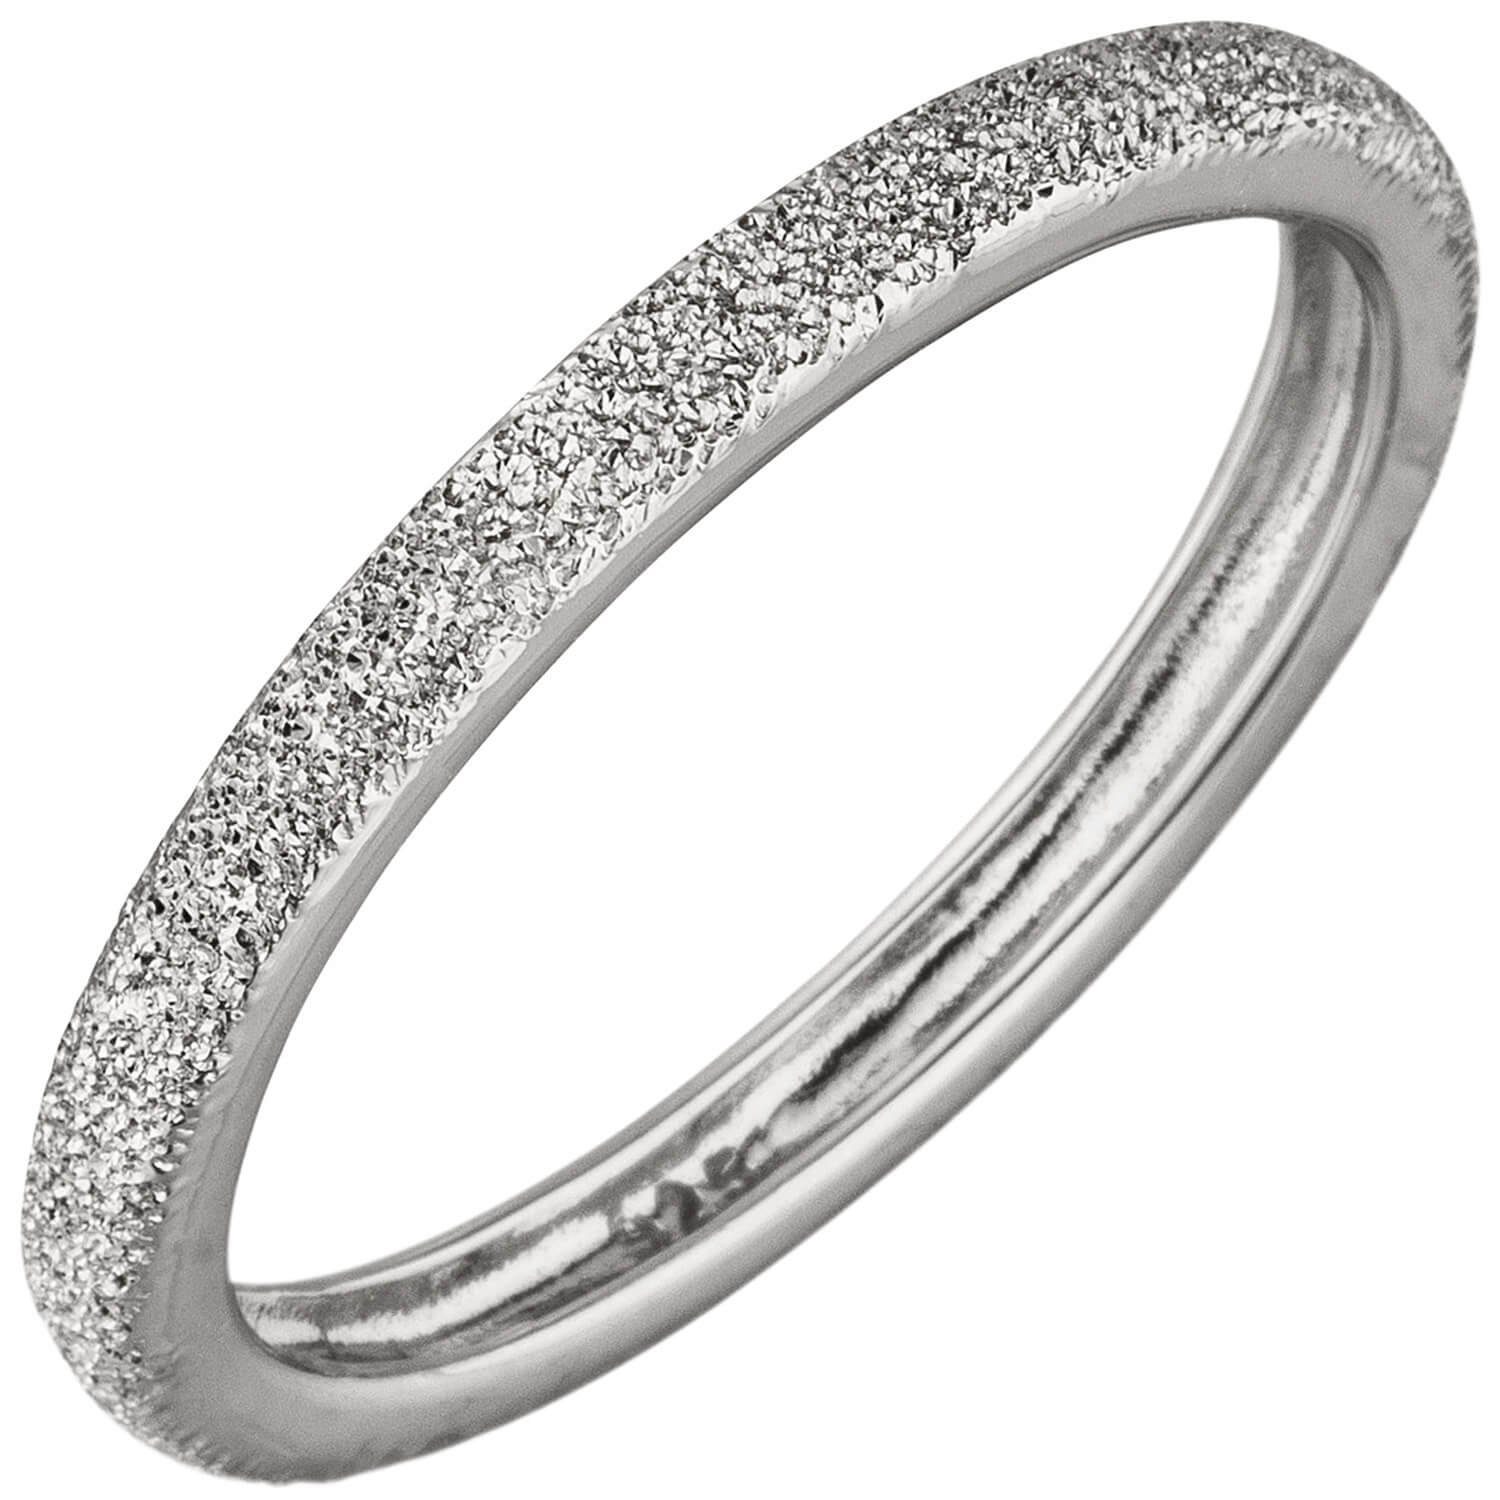 Schmuck Krone Silberring Ring Damenring aus 925 Silber mit Sternenstaub Struktur flach 2,2mm schmal, Silber 925 | Silberringe